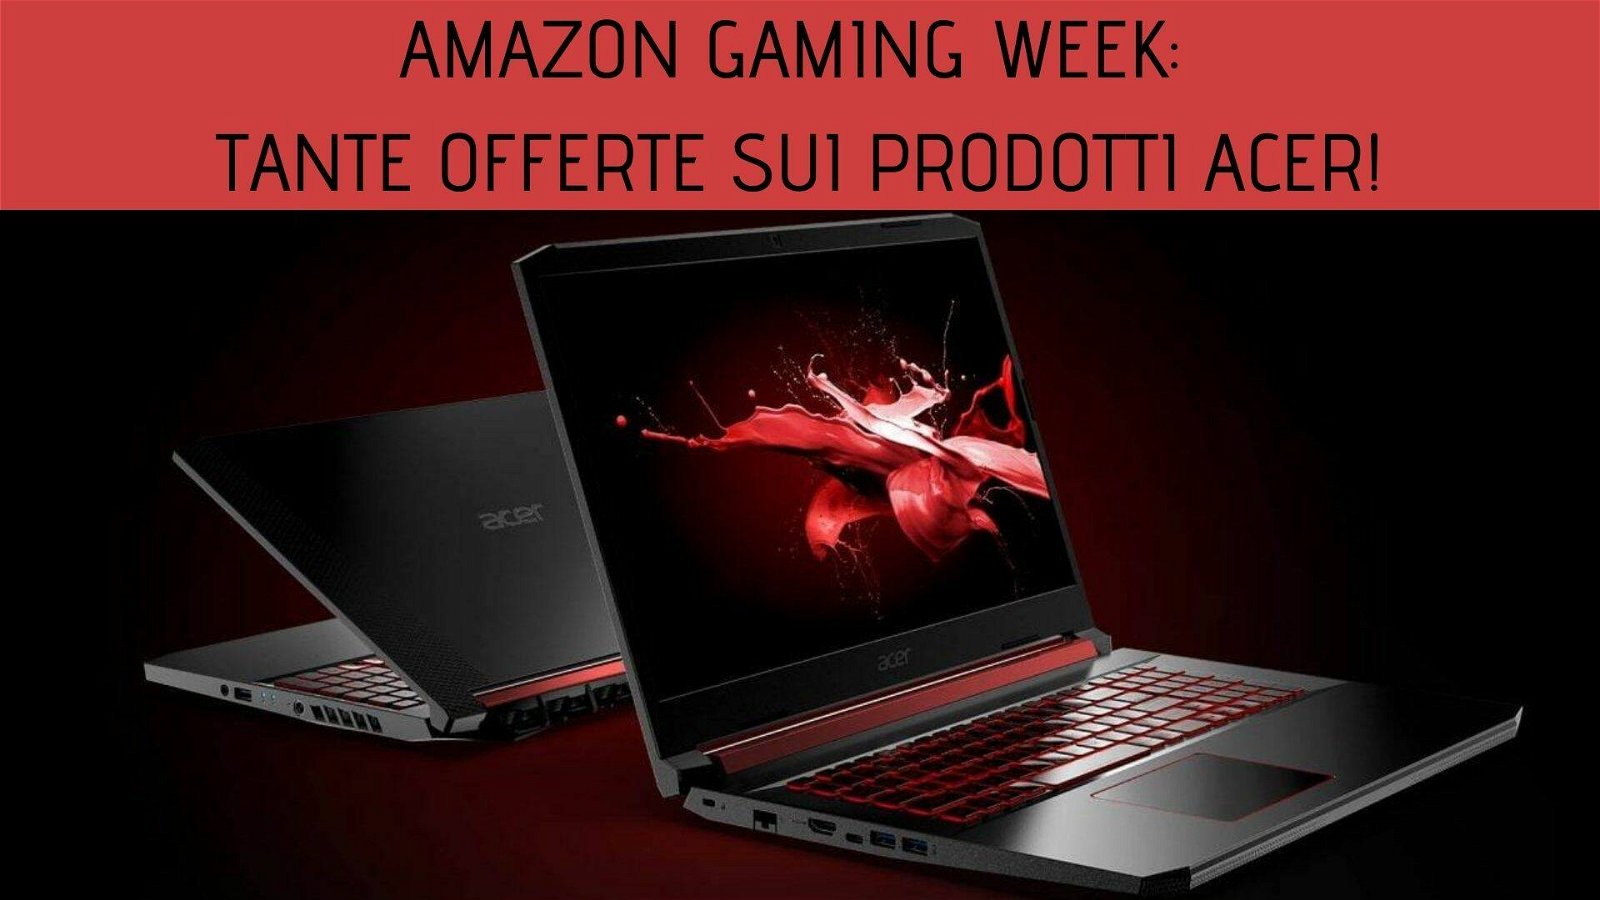 Immagine di Amazon Gaming Week: tante offerte sui prodotti Acer!